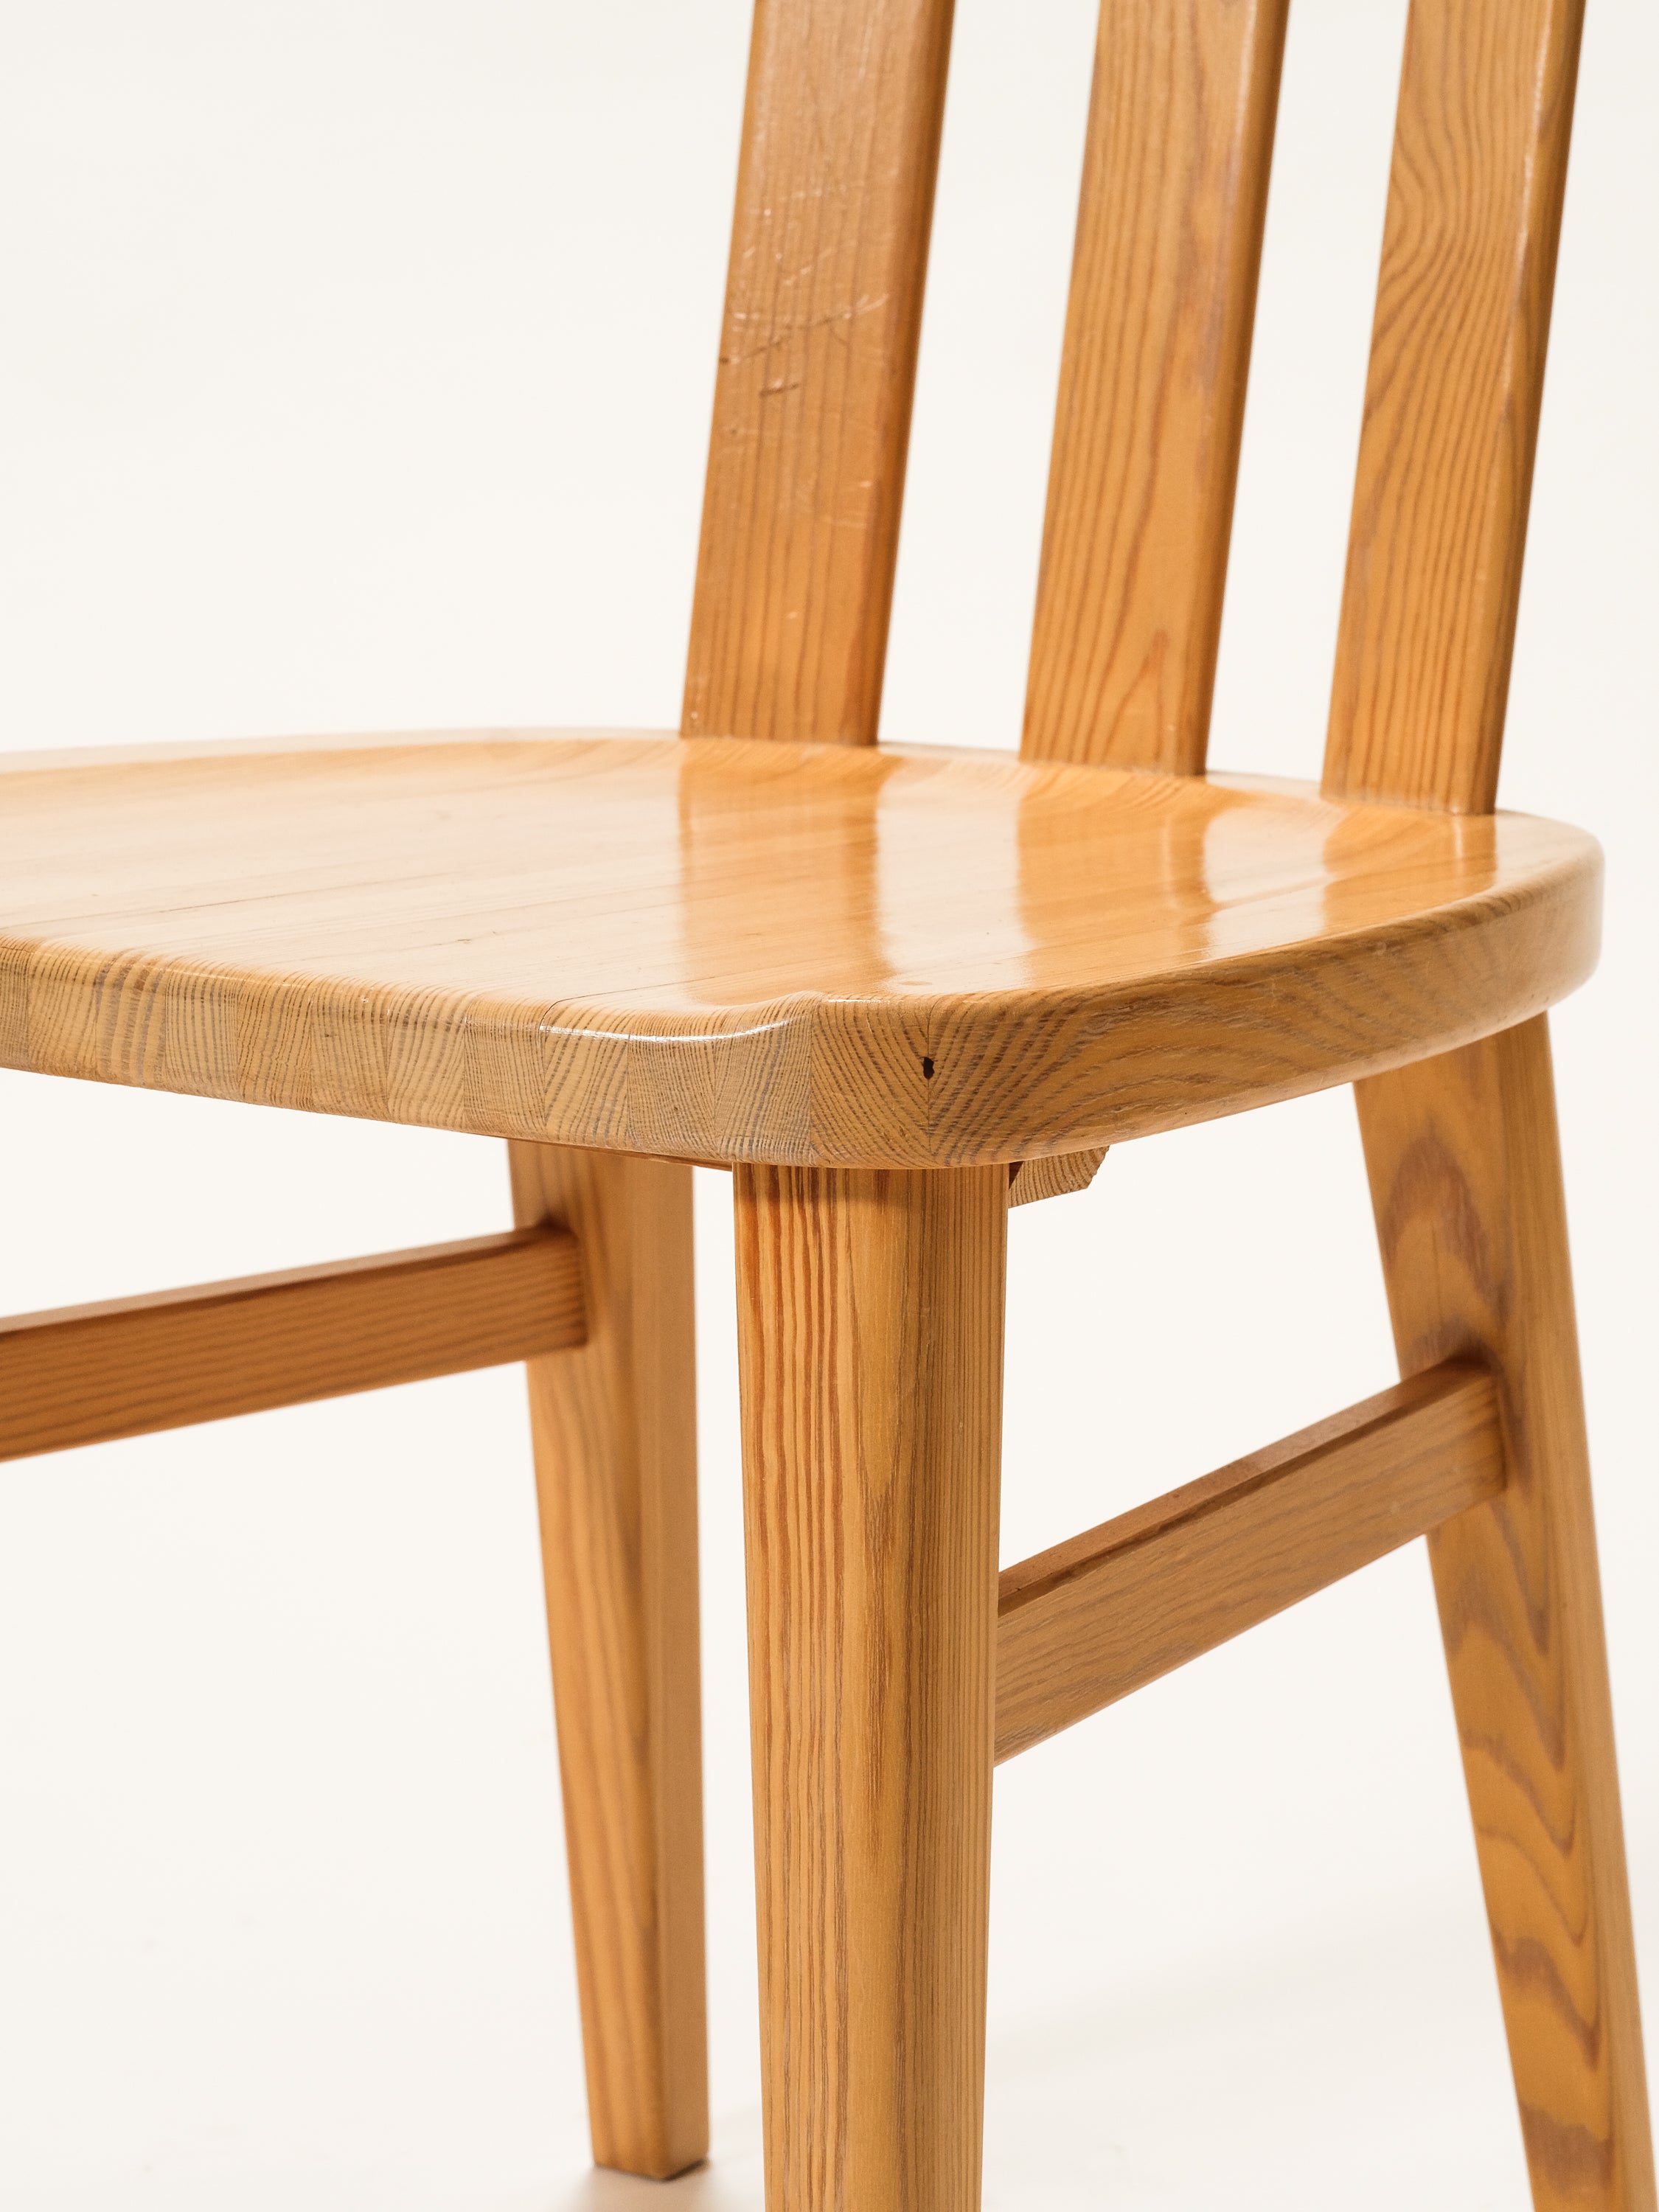 Solid Pine Dining Chairs Model "Leo" by Werner West for Keravan Puusepäntehdas, Set of 6